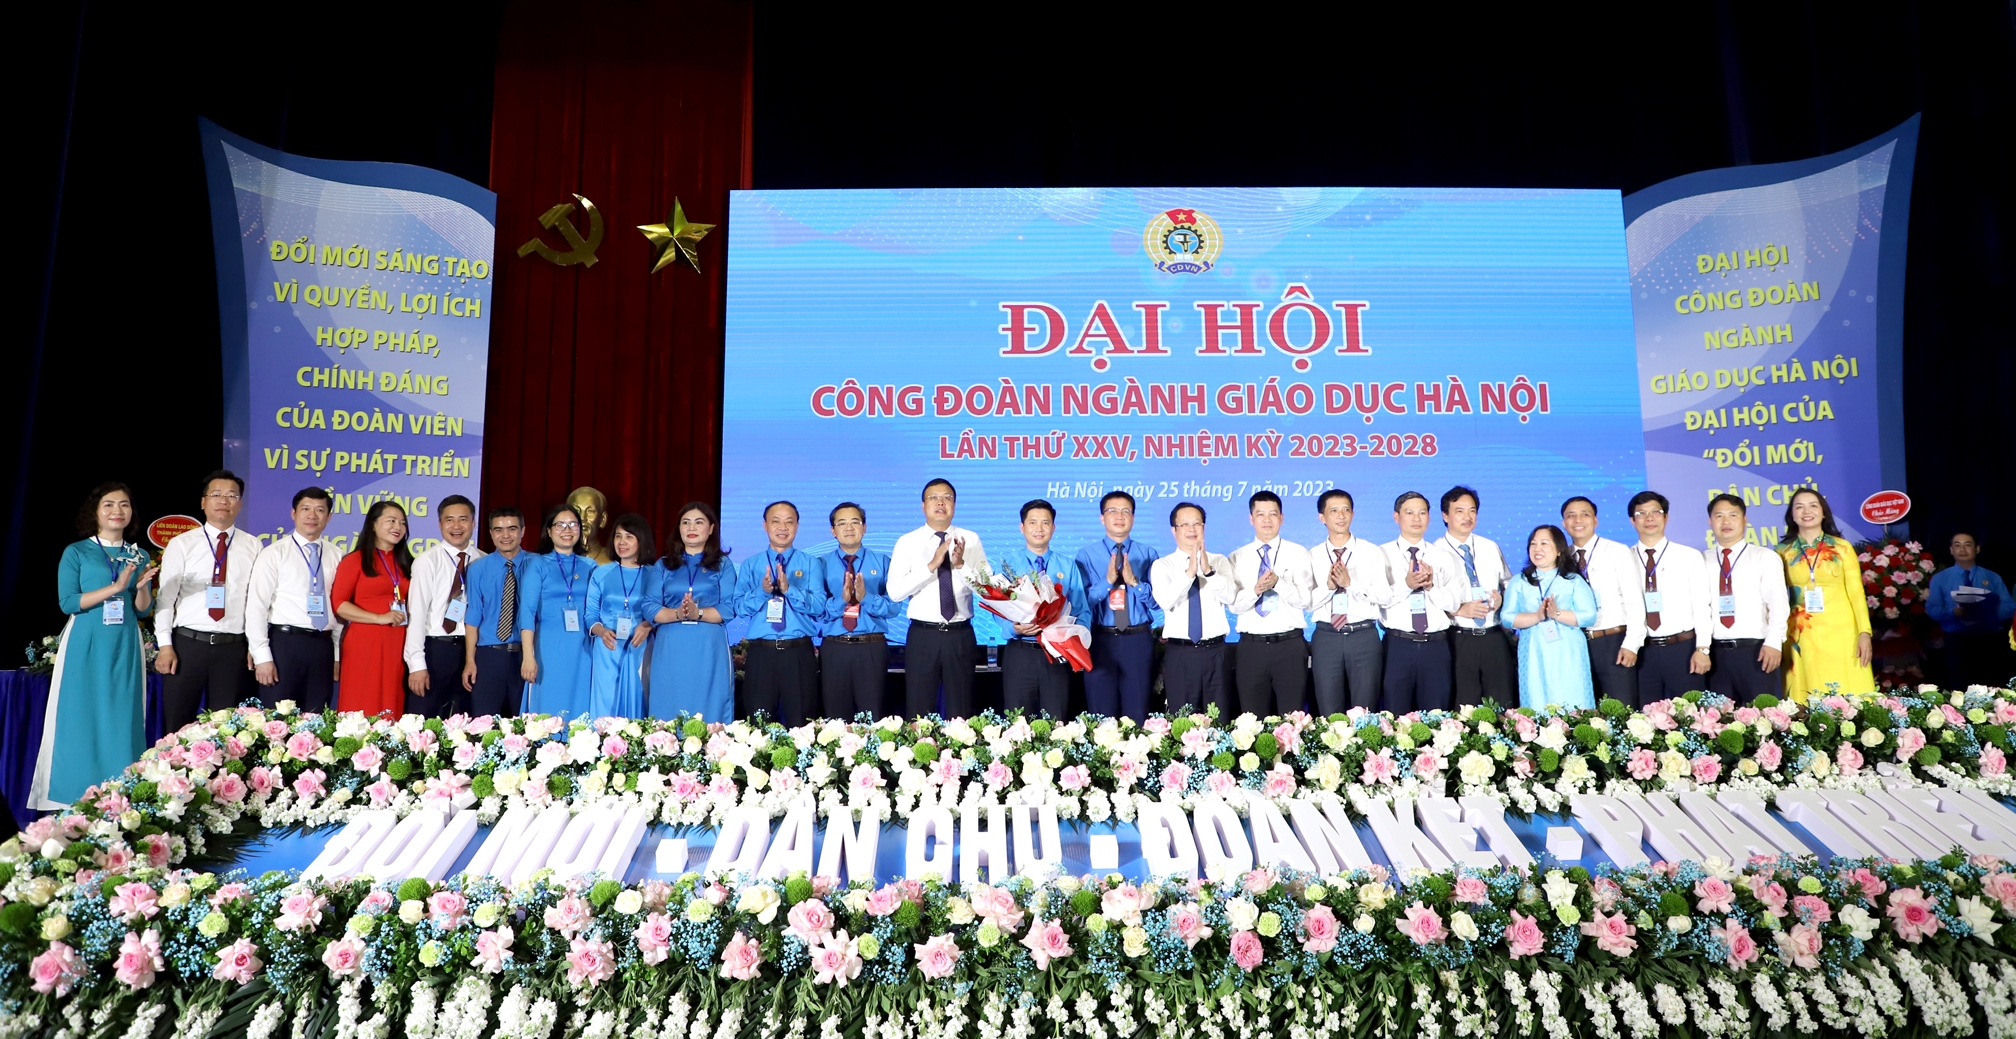 Đồng chí Đỗ Văn Nam được bầu giữ chức Chủ tịch Công đoàn ngành Giáo dục Hà Nội